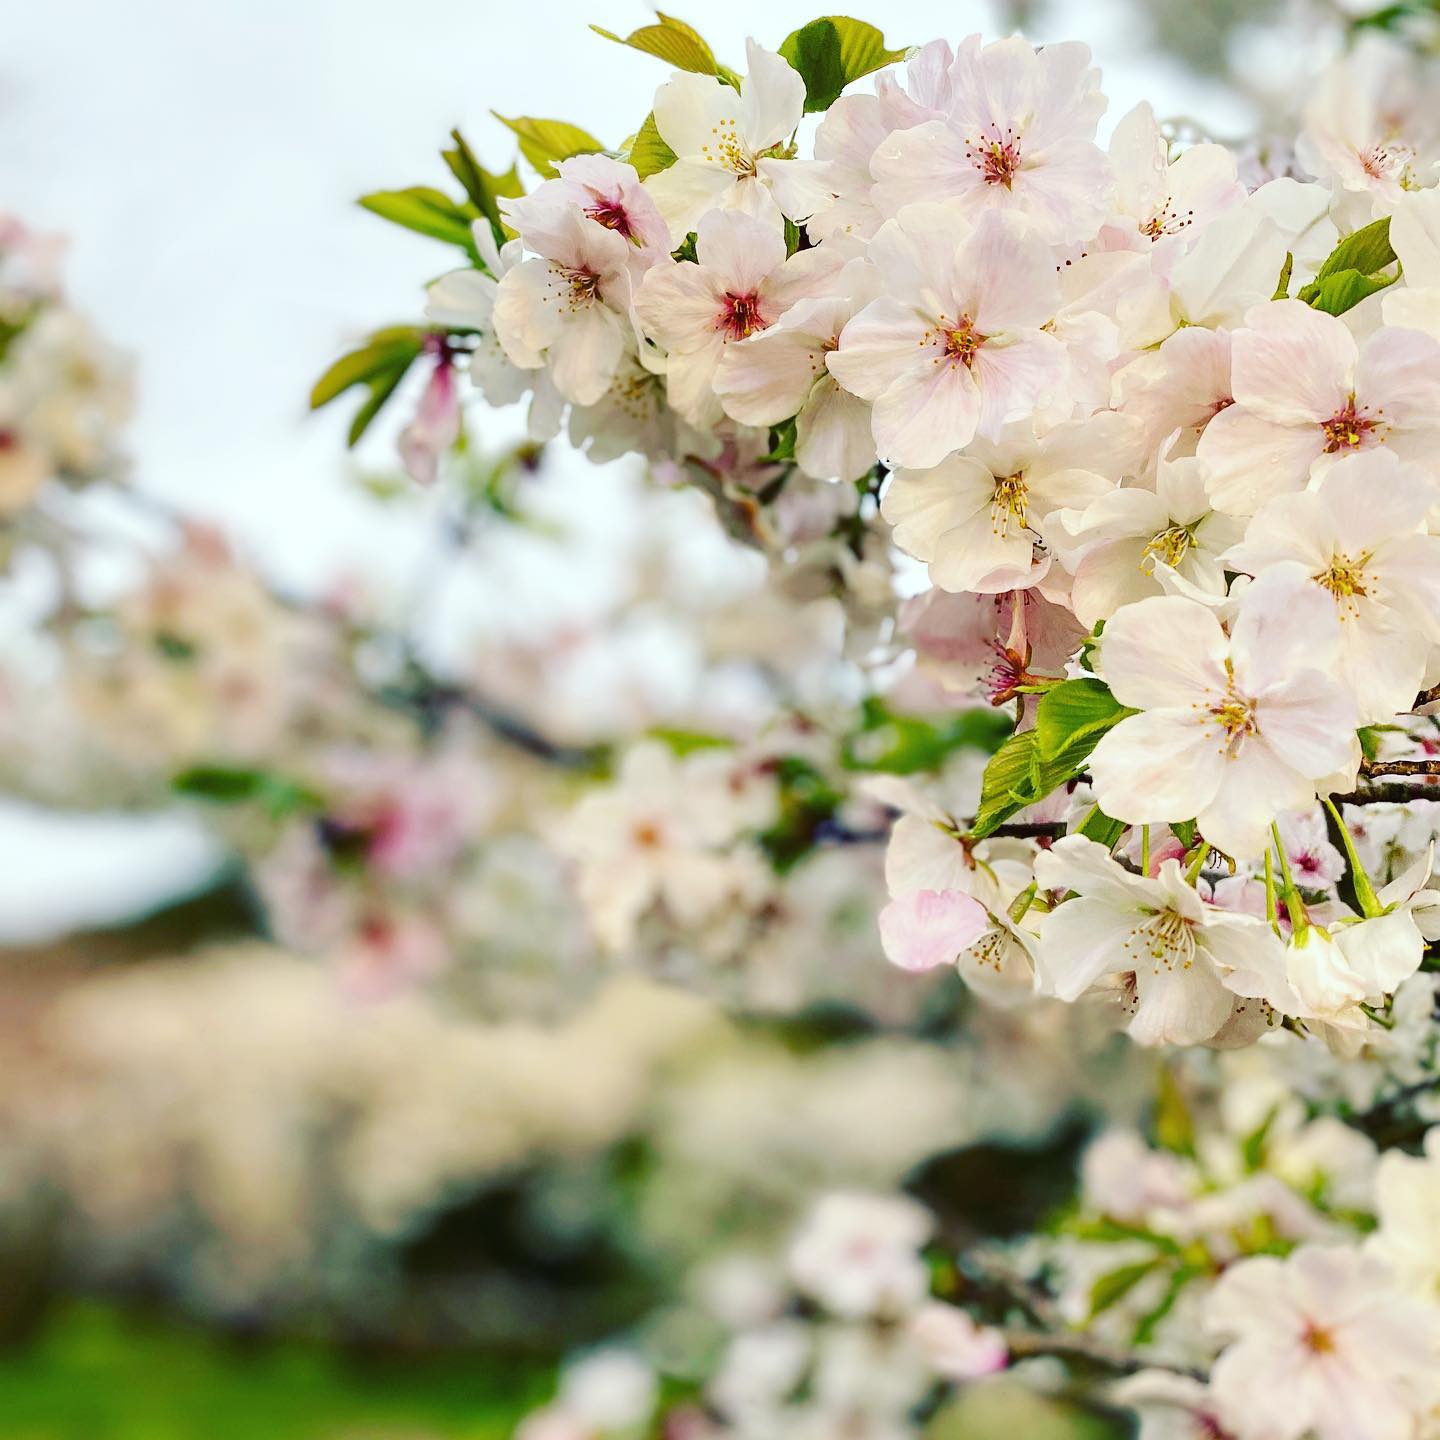 今日（2021/3/21）のサクラ　パート2@東温市見奈良某所こちらの桜は早くも満開のモノが数本。菜の花と一緒に咲いている樹もあり、雨上がり＆日没寸前で条件はよろしくない中でも、十分に桜の美しさを堪能できましたこちらも一週間後が楽しみです。#さくら #東温市 #見奈良 #菜の花 #桜 #空撮 #ドローン #ドローン撮影 #ドローン花見 #空撮動画 #mavicmini